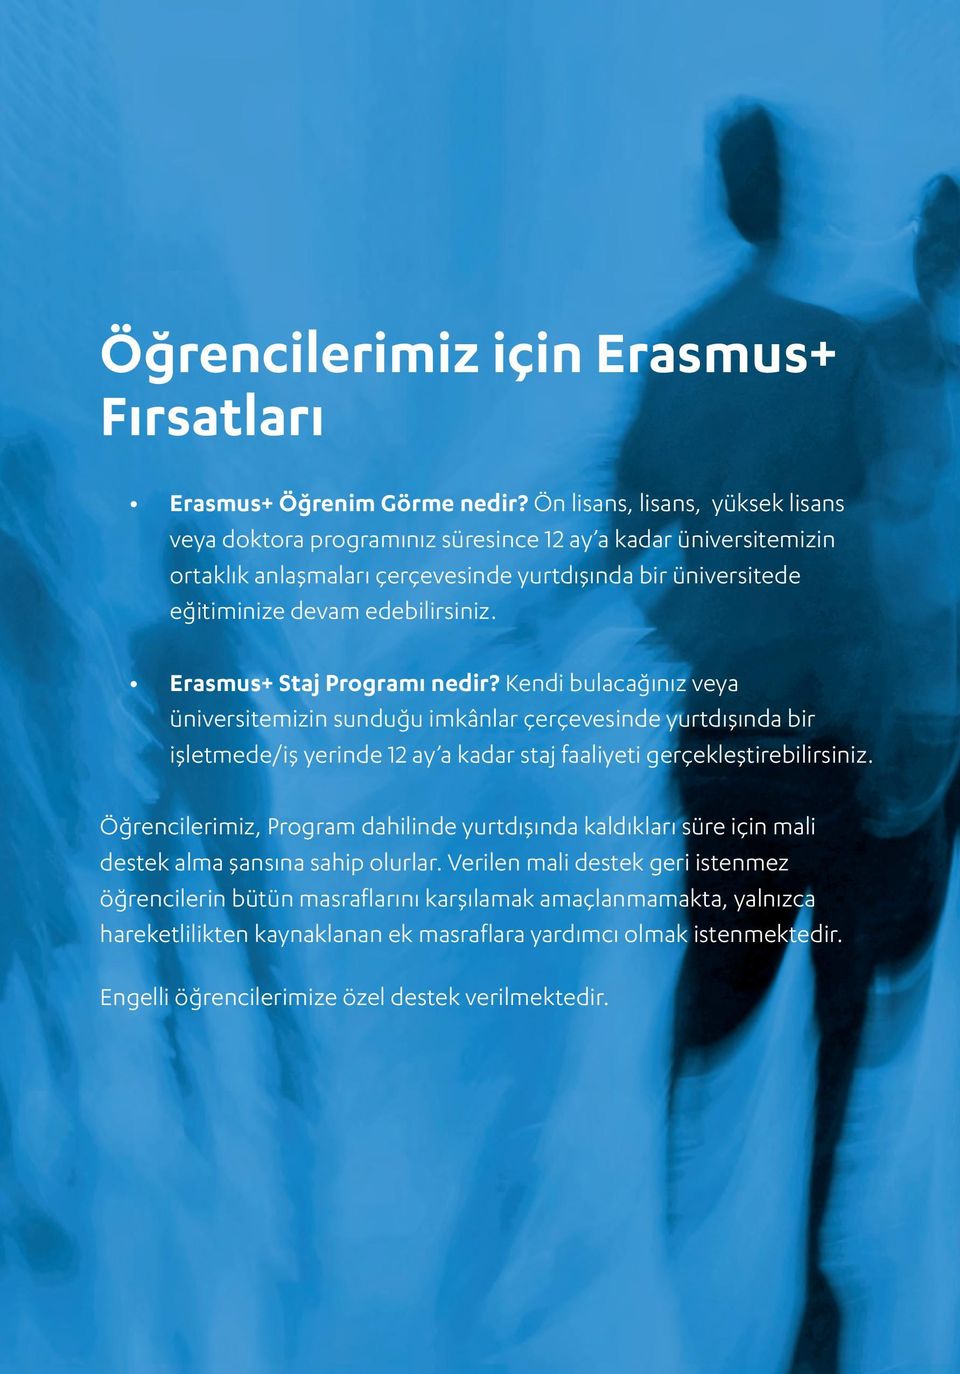 Erasmus+ Staj Programı nedir? Kendi bulacağınız veya üniversitemizin sunduğu imkânlar çerçevesinde yurtdışında bir işletmede/iş yerinde 12 ay a kadar staj faaliyeti gerçekleştirebilirsiniz.